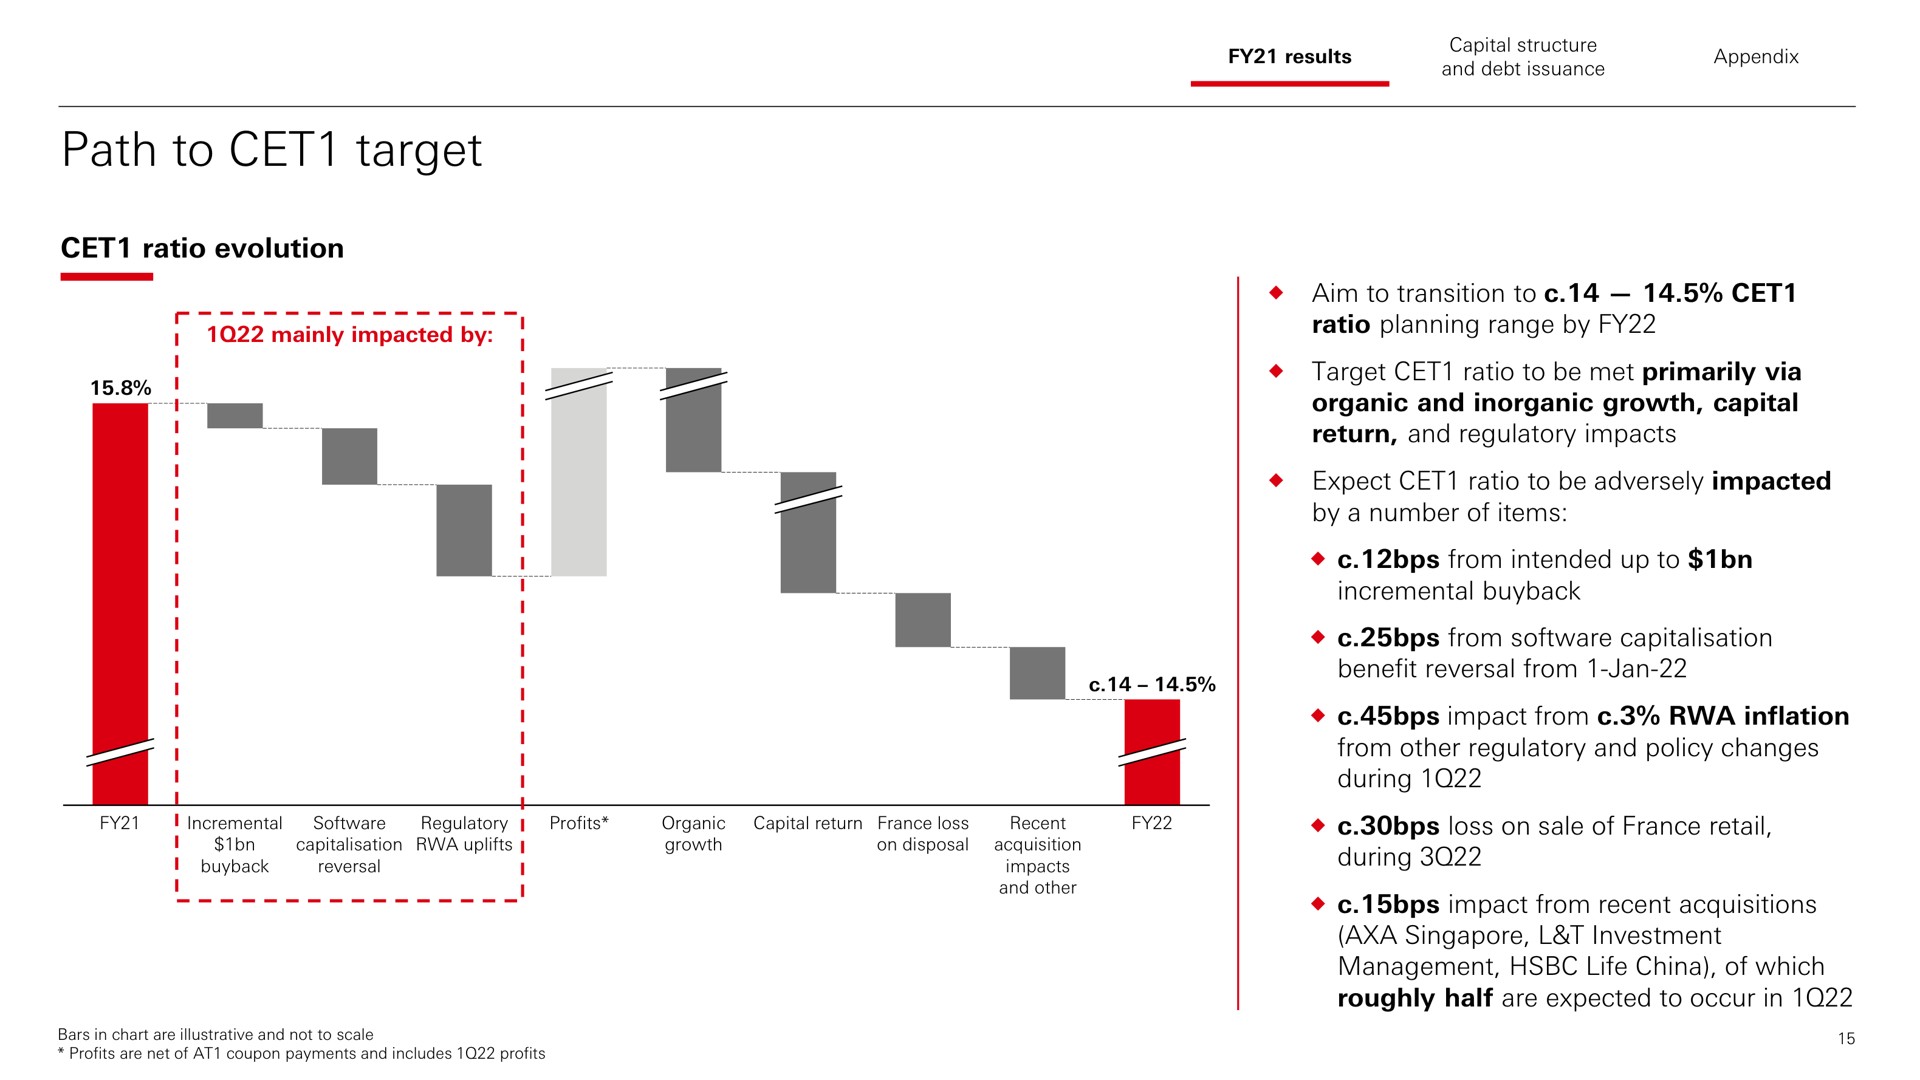 path to target ratio evolution | HSBC